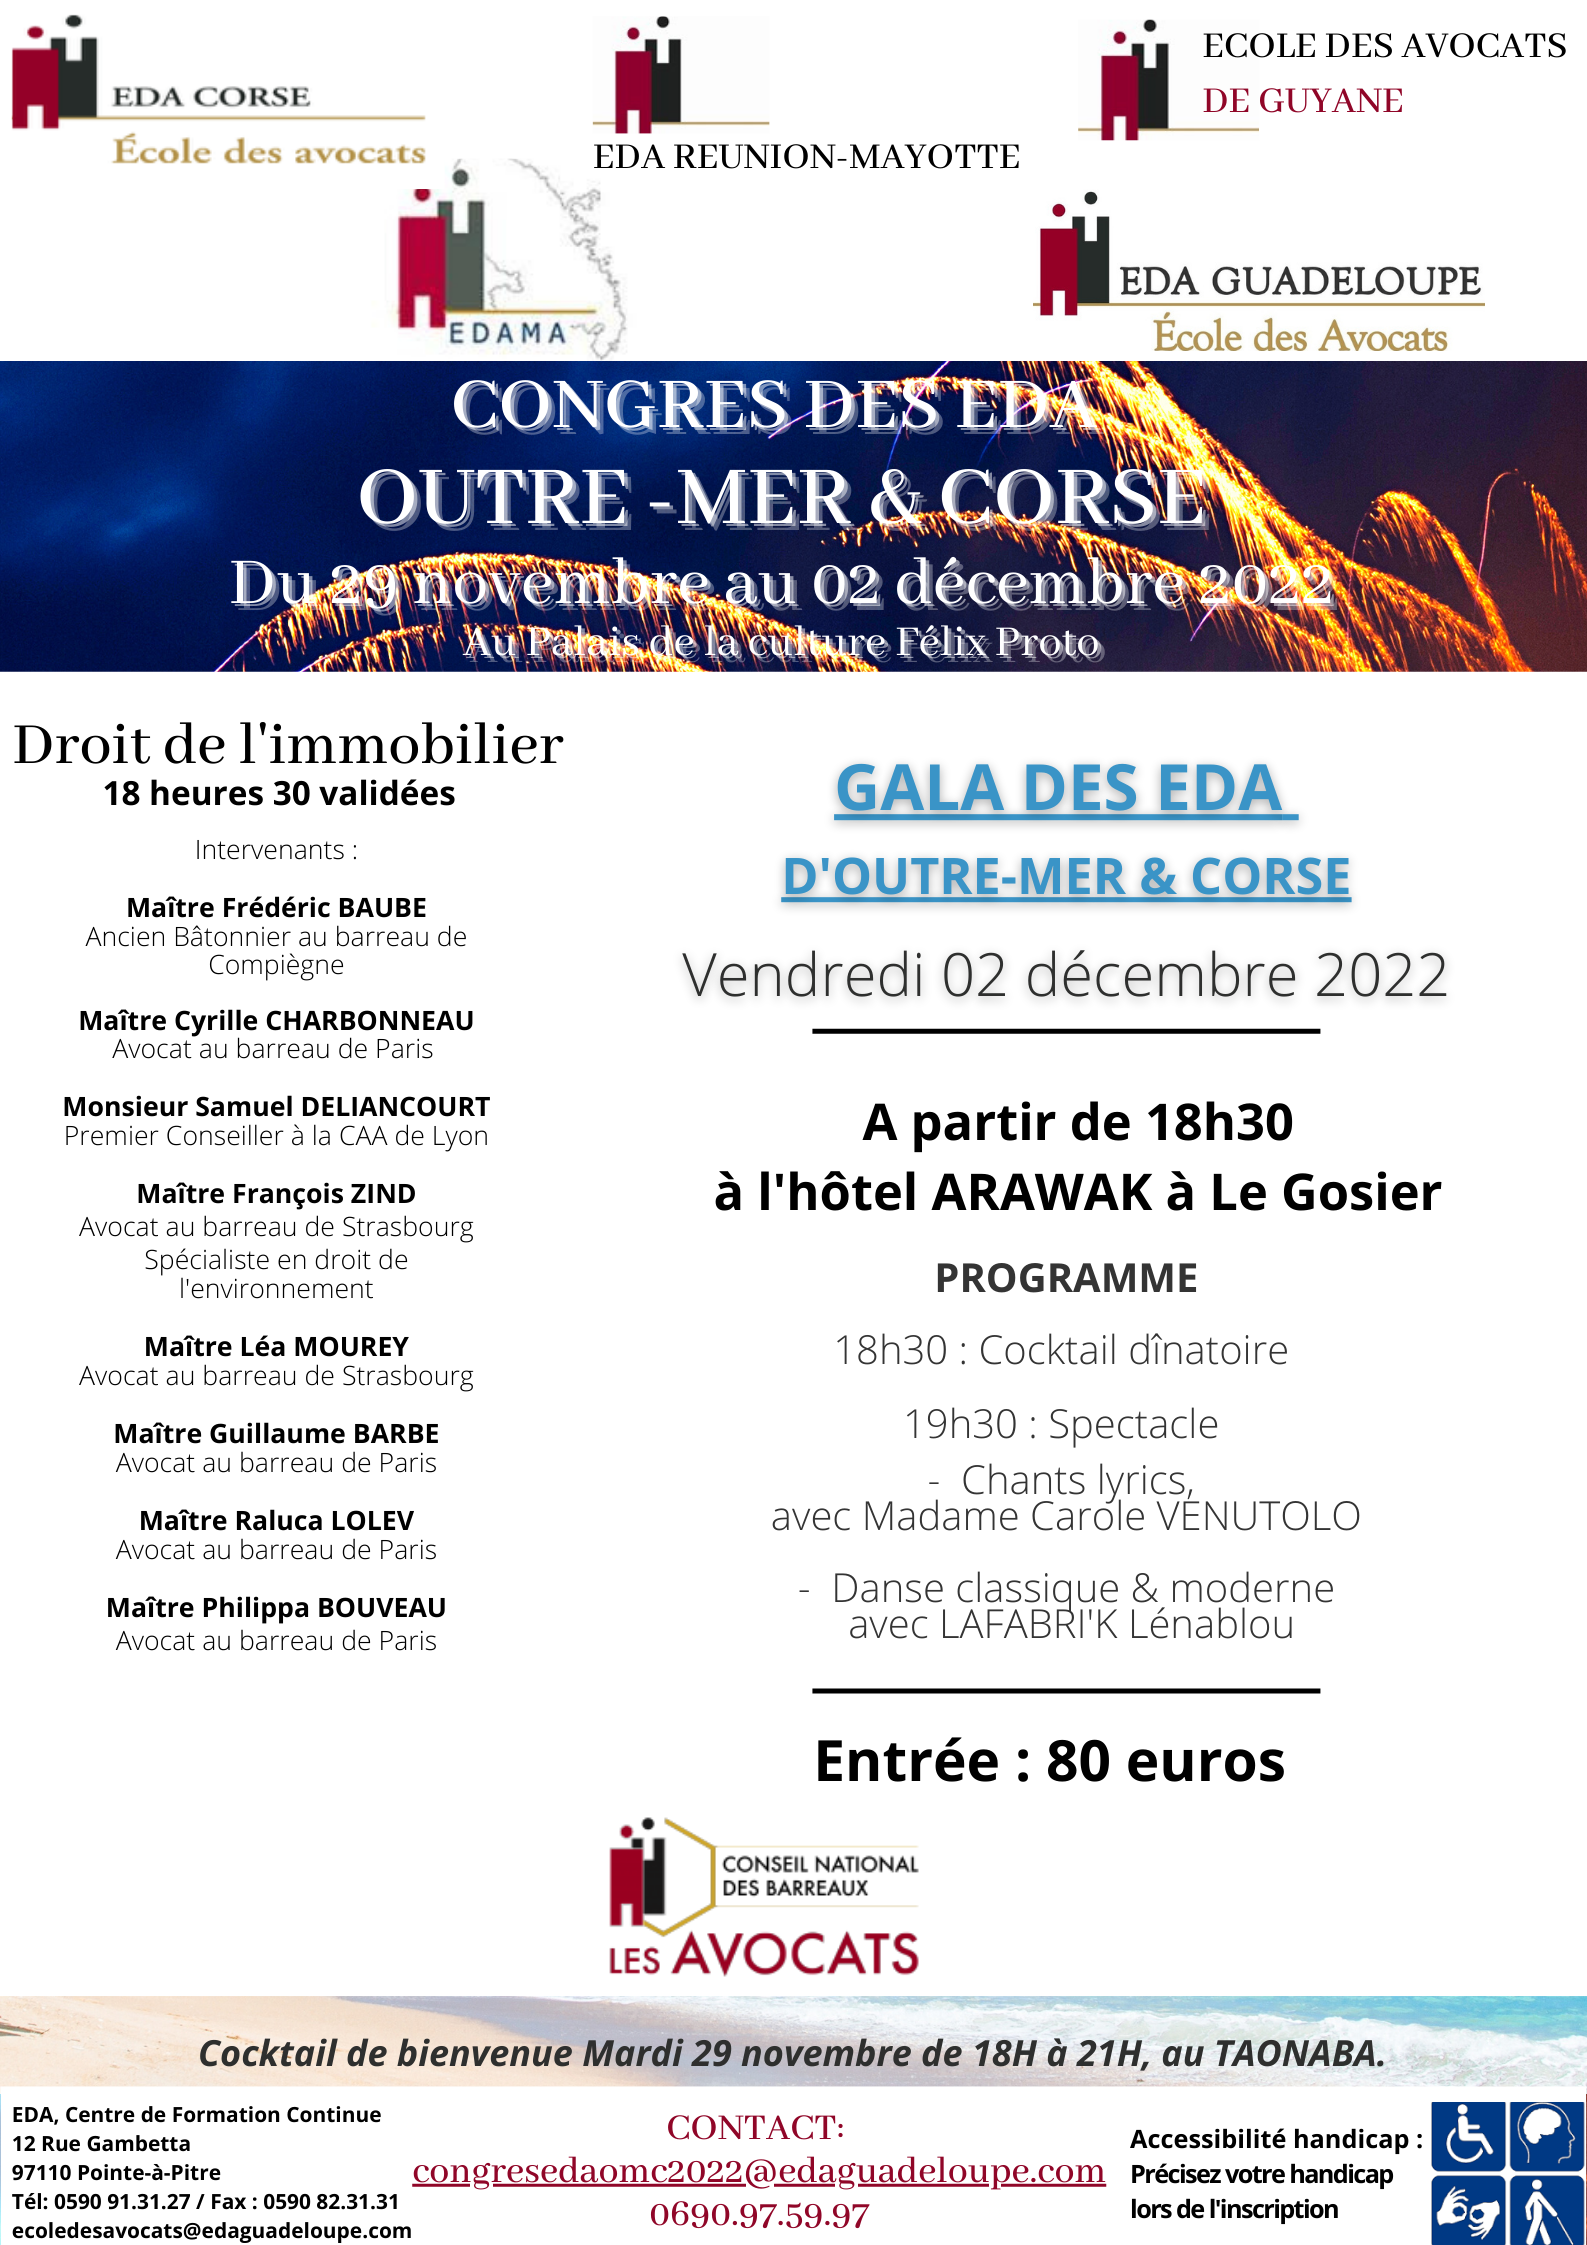 CONGRES DES EDA D'OUTRE-MER & CORSE du 29/11/2022 au 02/12/2022